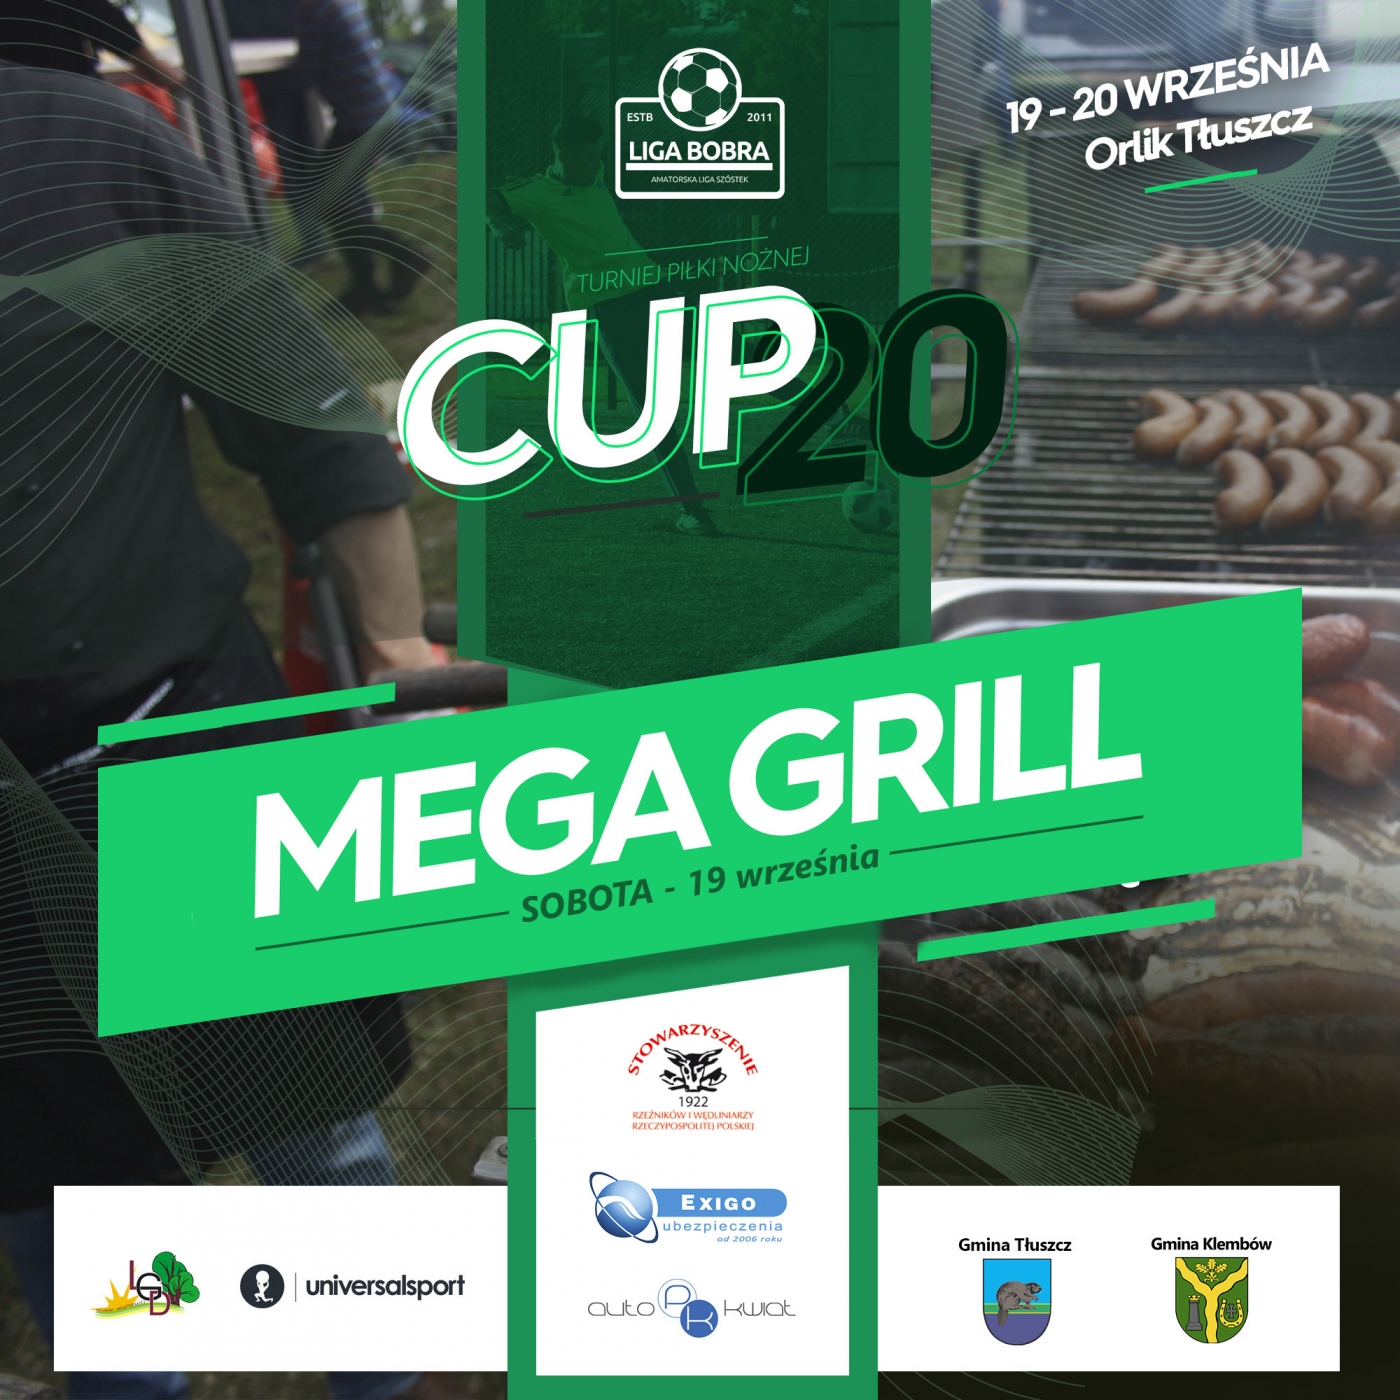 Mega Grill - CUP20